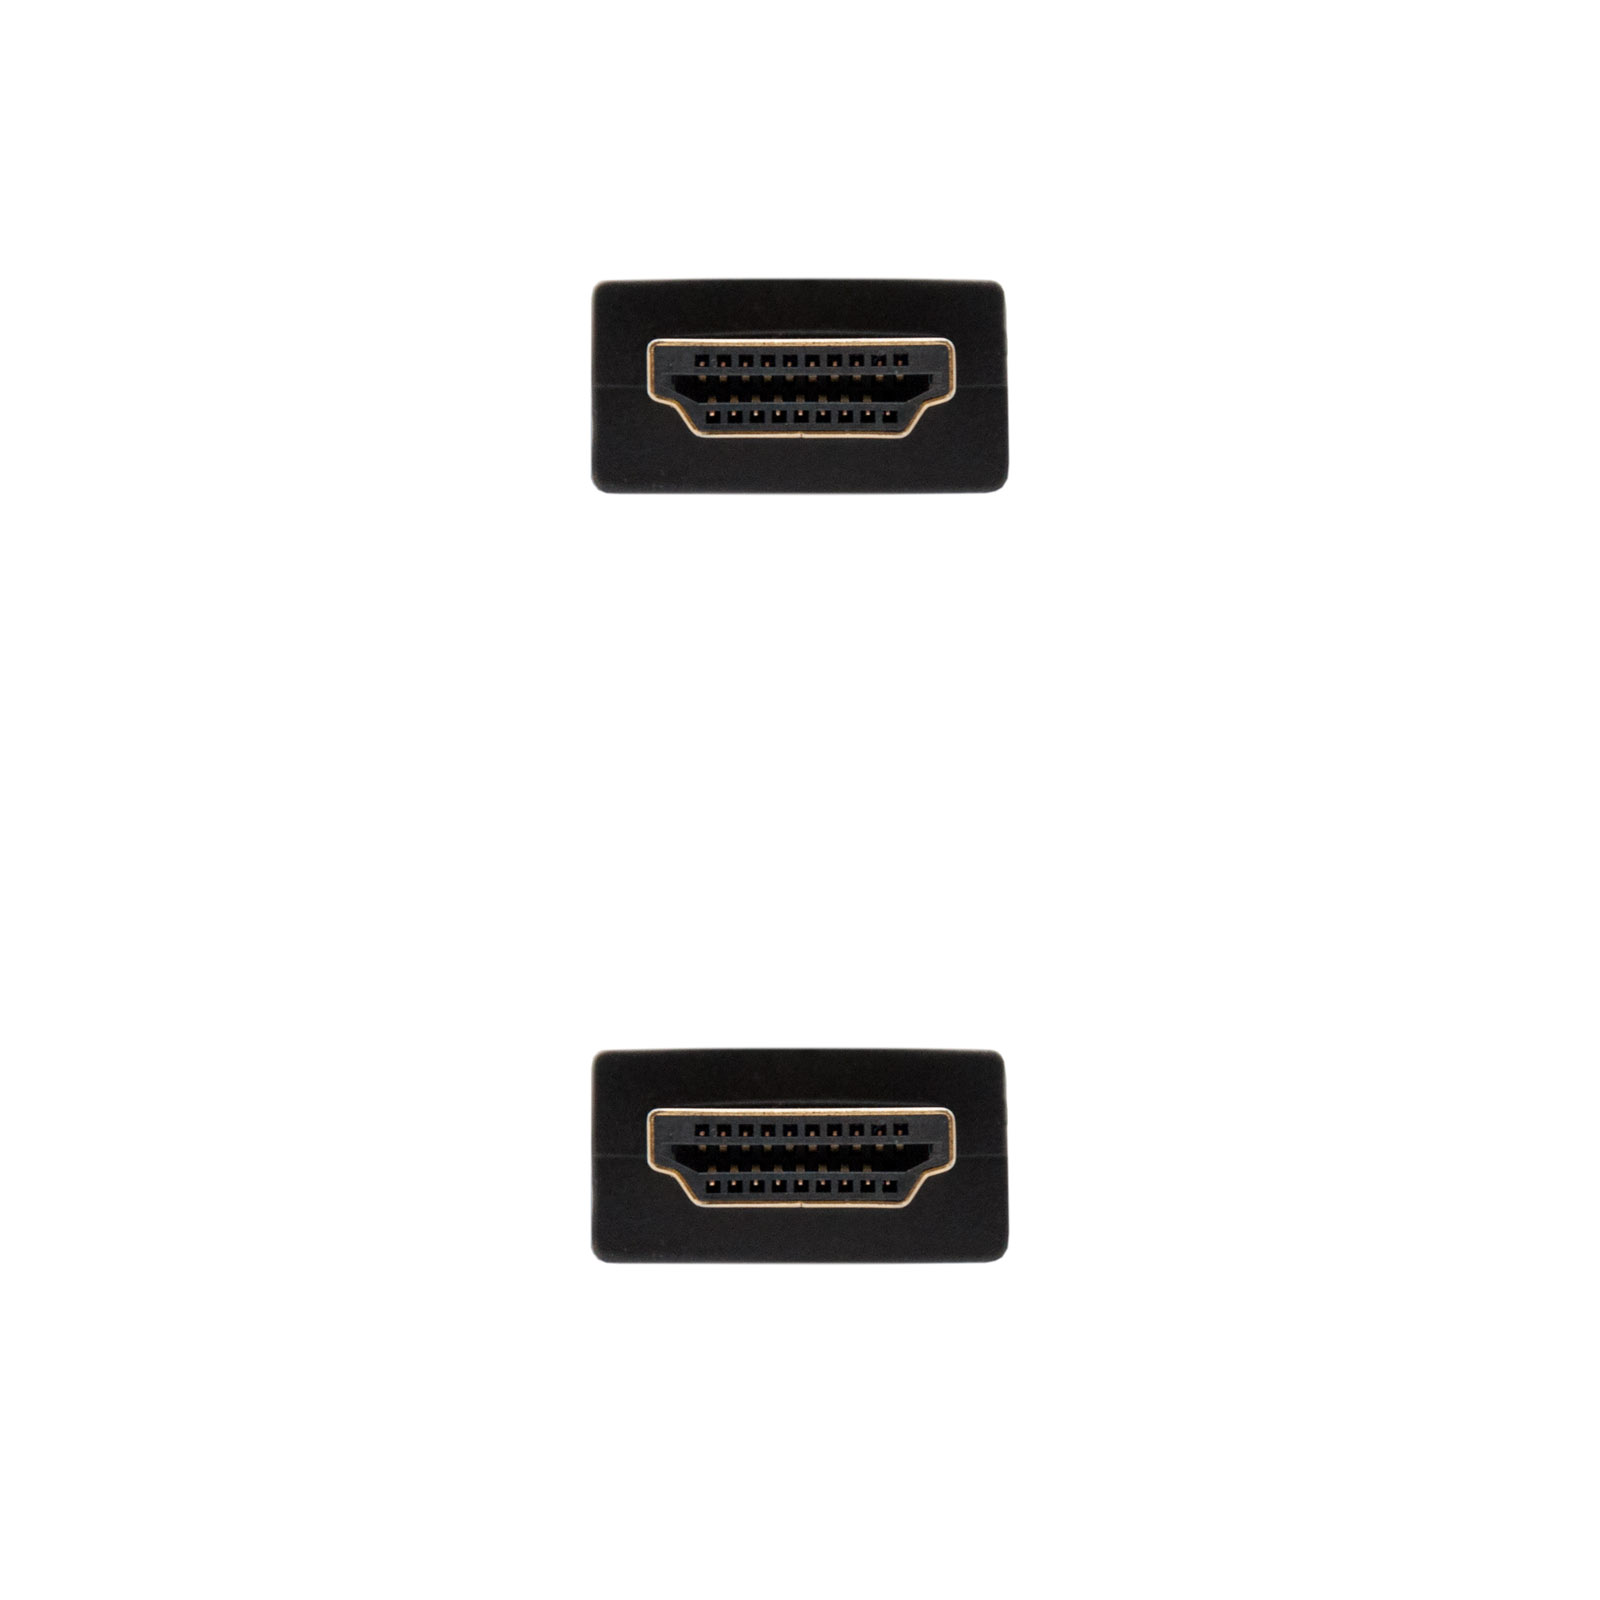 Nanocable Câble HDMI v2.0 Mâle vers HDMI v2.0 Mâle 5m - 4K@60Hz 18Gbps - Couleur Noir